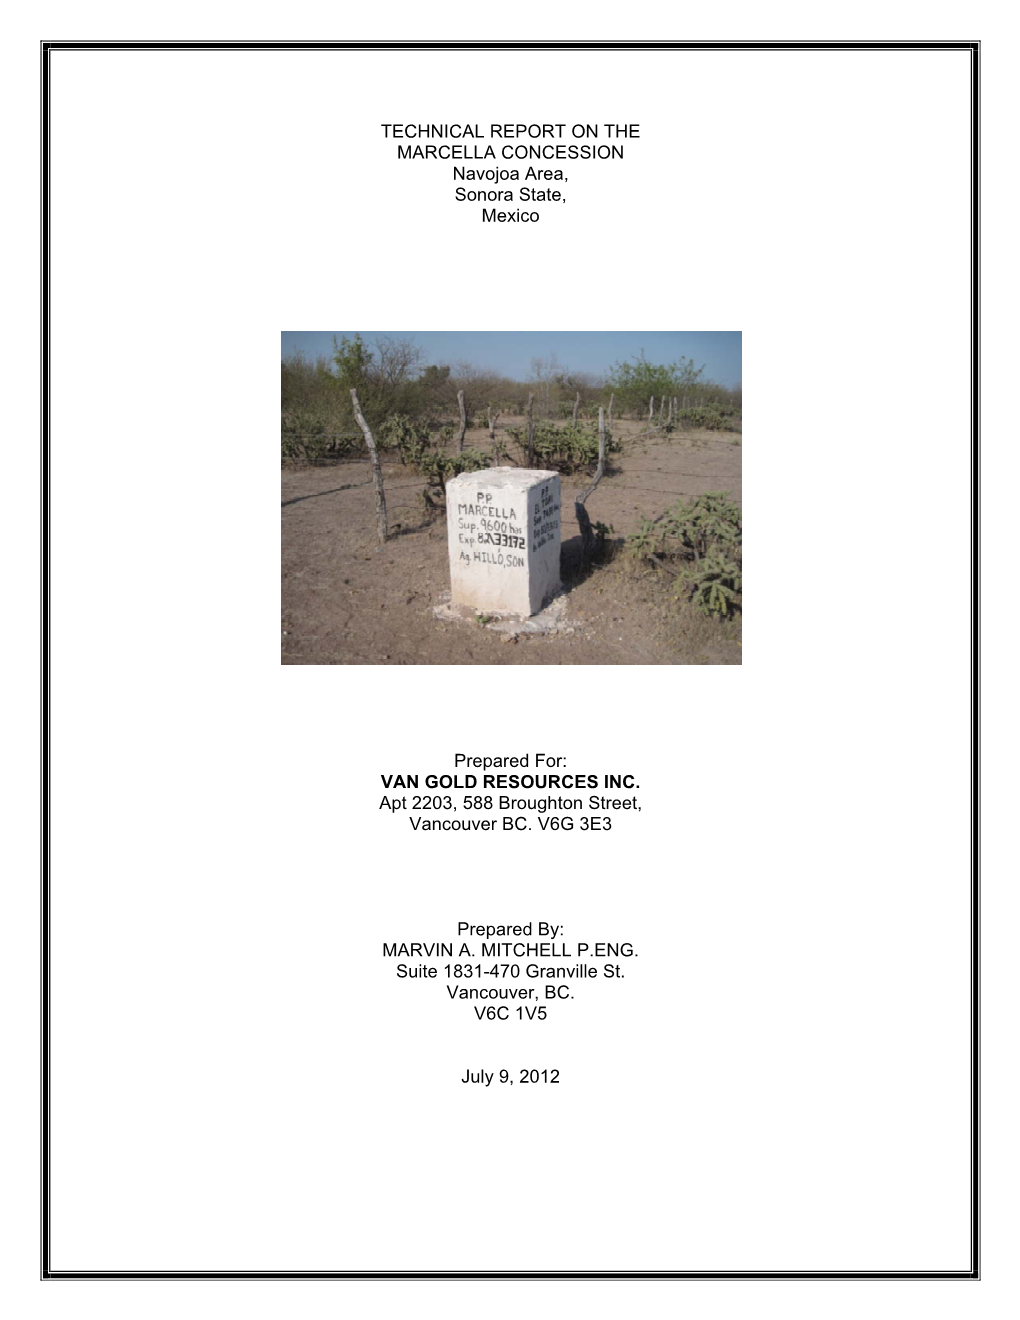 TECHNICAL REPORT on the MARCELLA CONCESSION Navojoa Area, Sonora State, Mexico